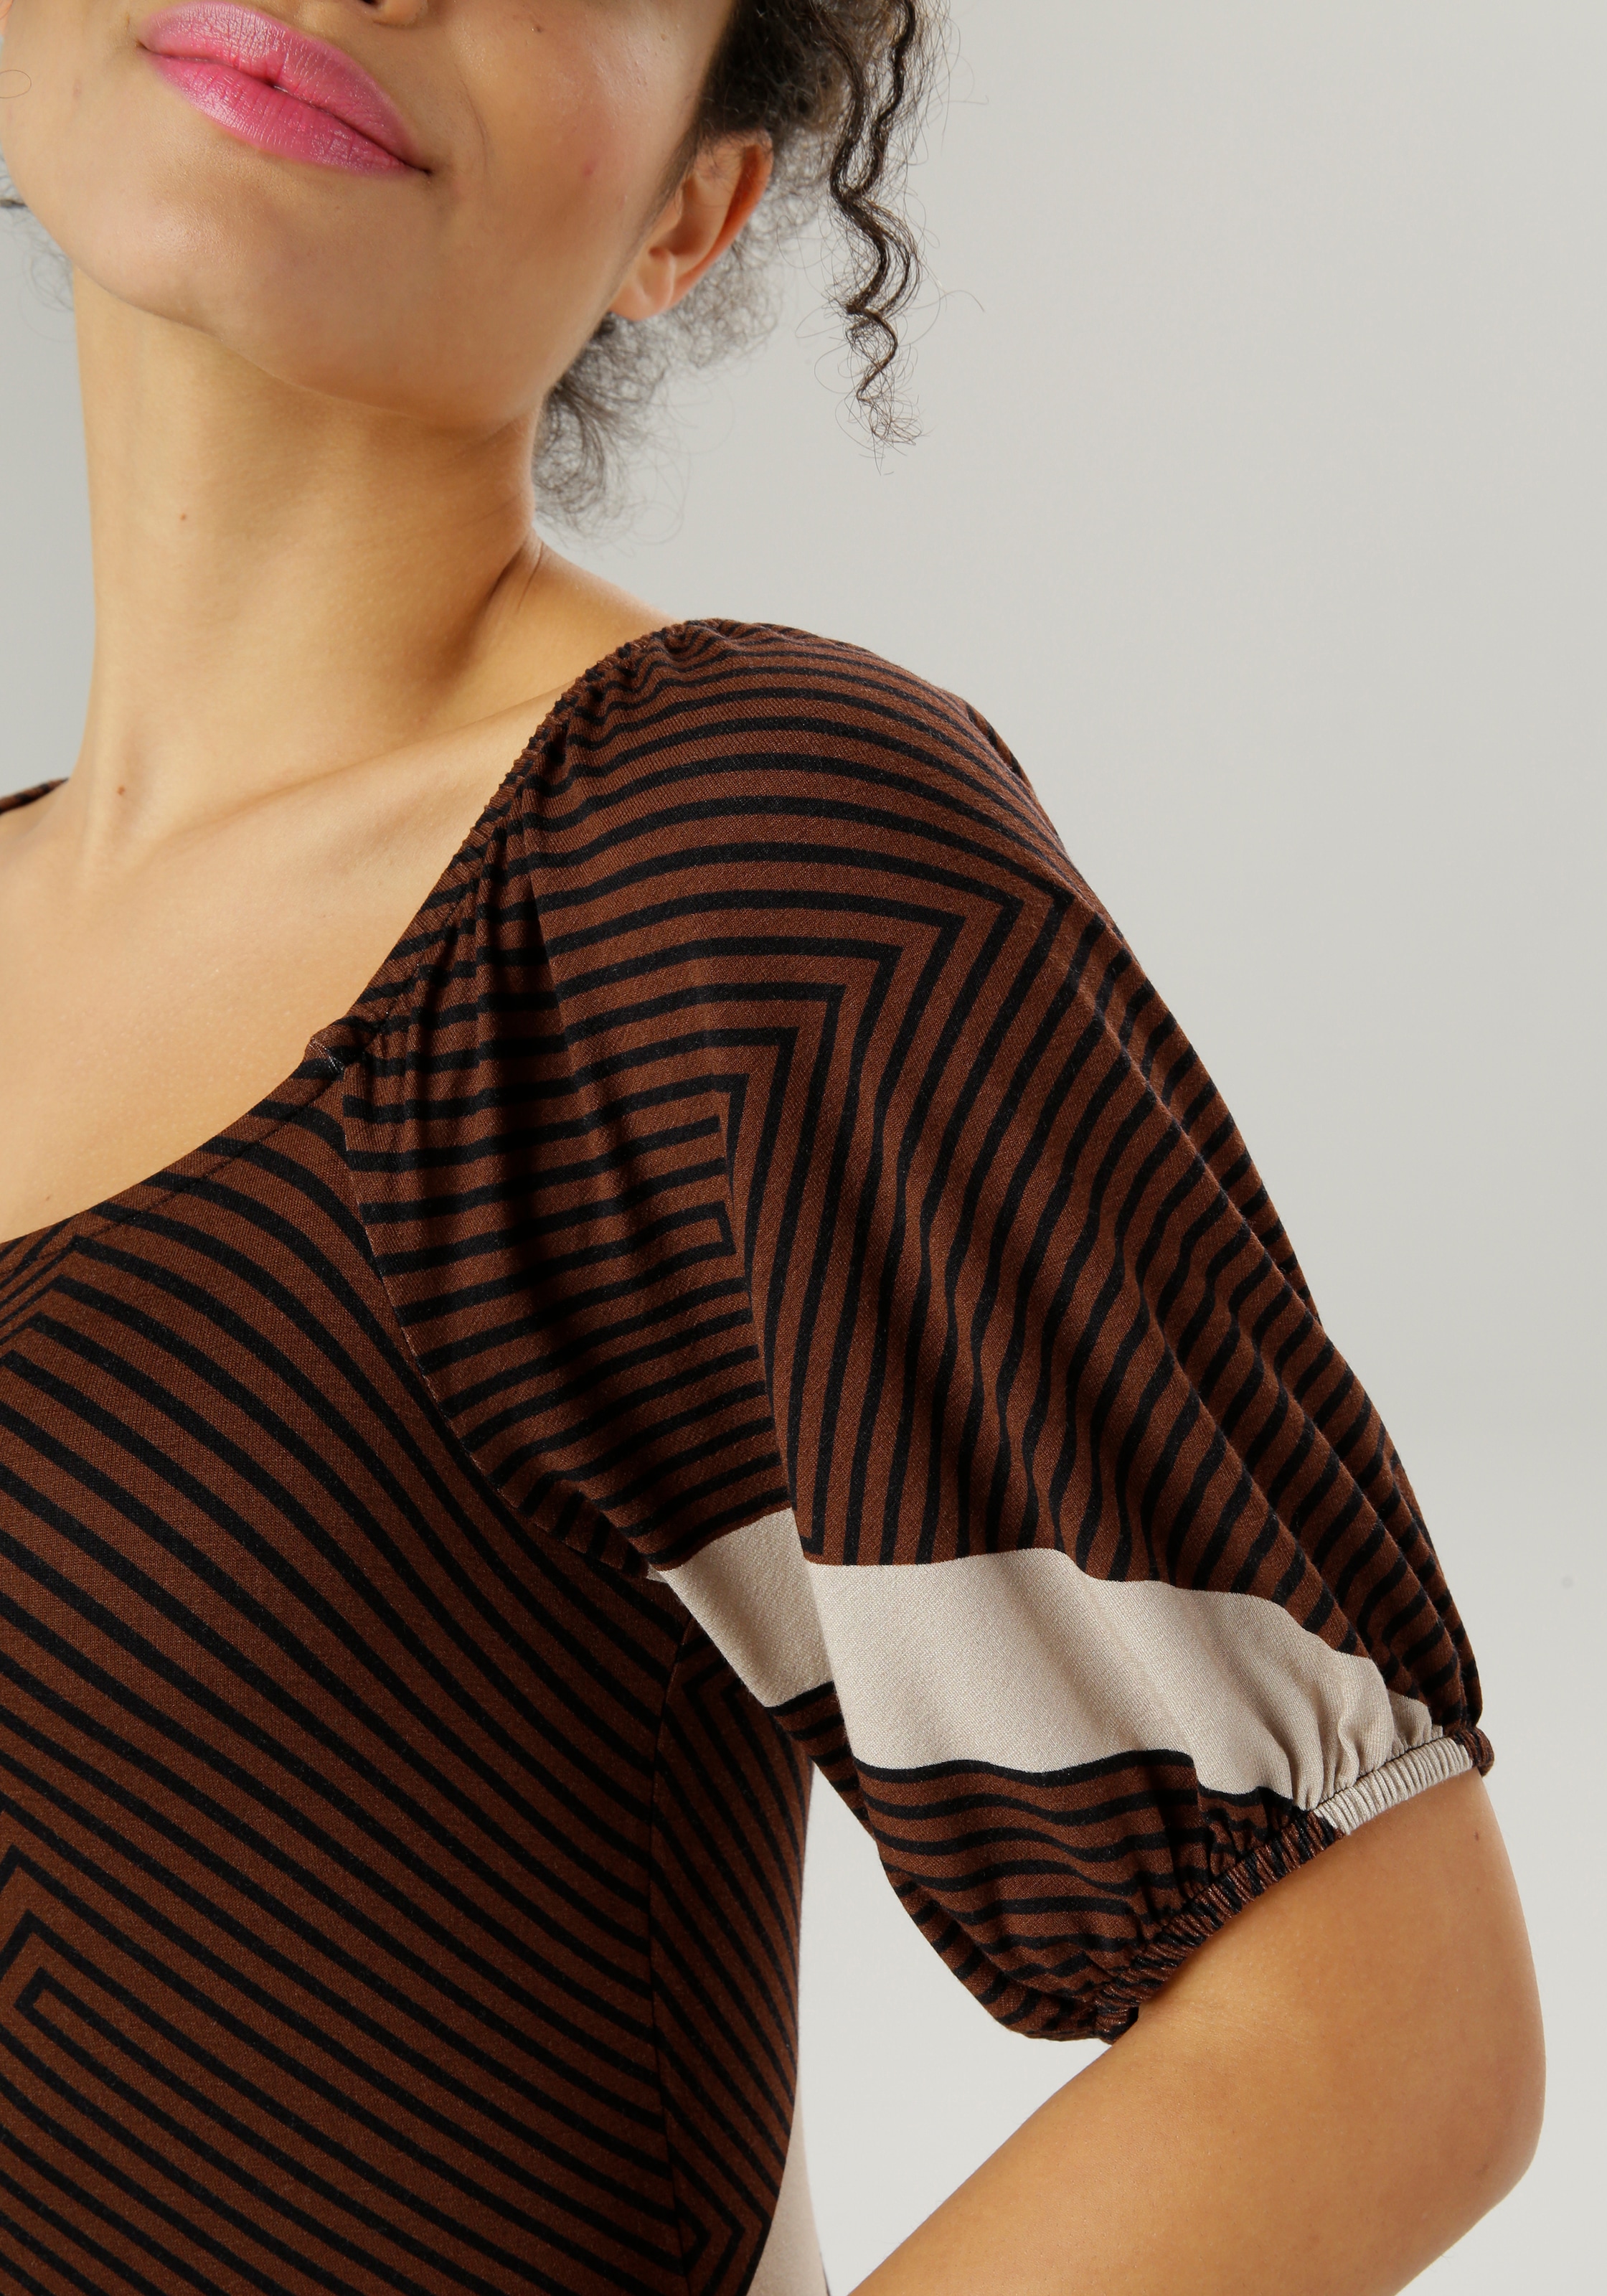 SELECTED OTTO kaufen Halbarm im Aniston Shop verlängertem Sommerkleid, mit Online